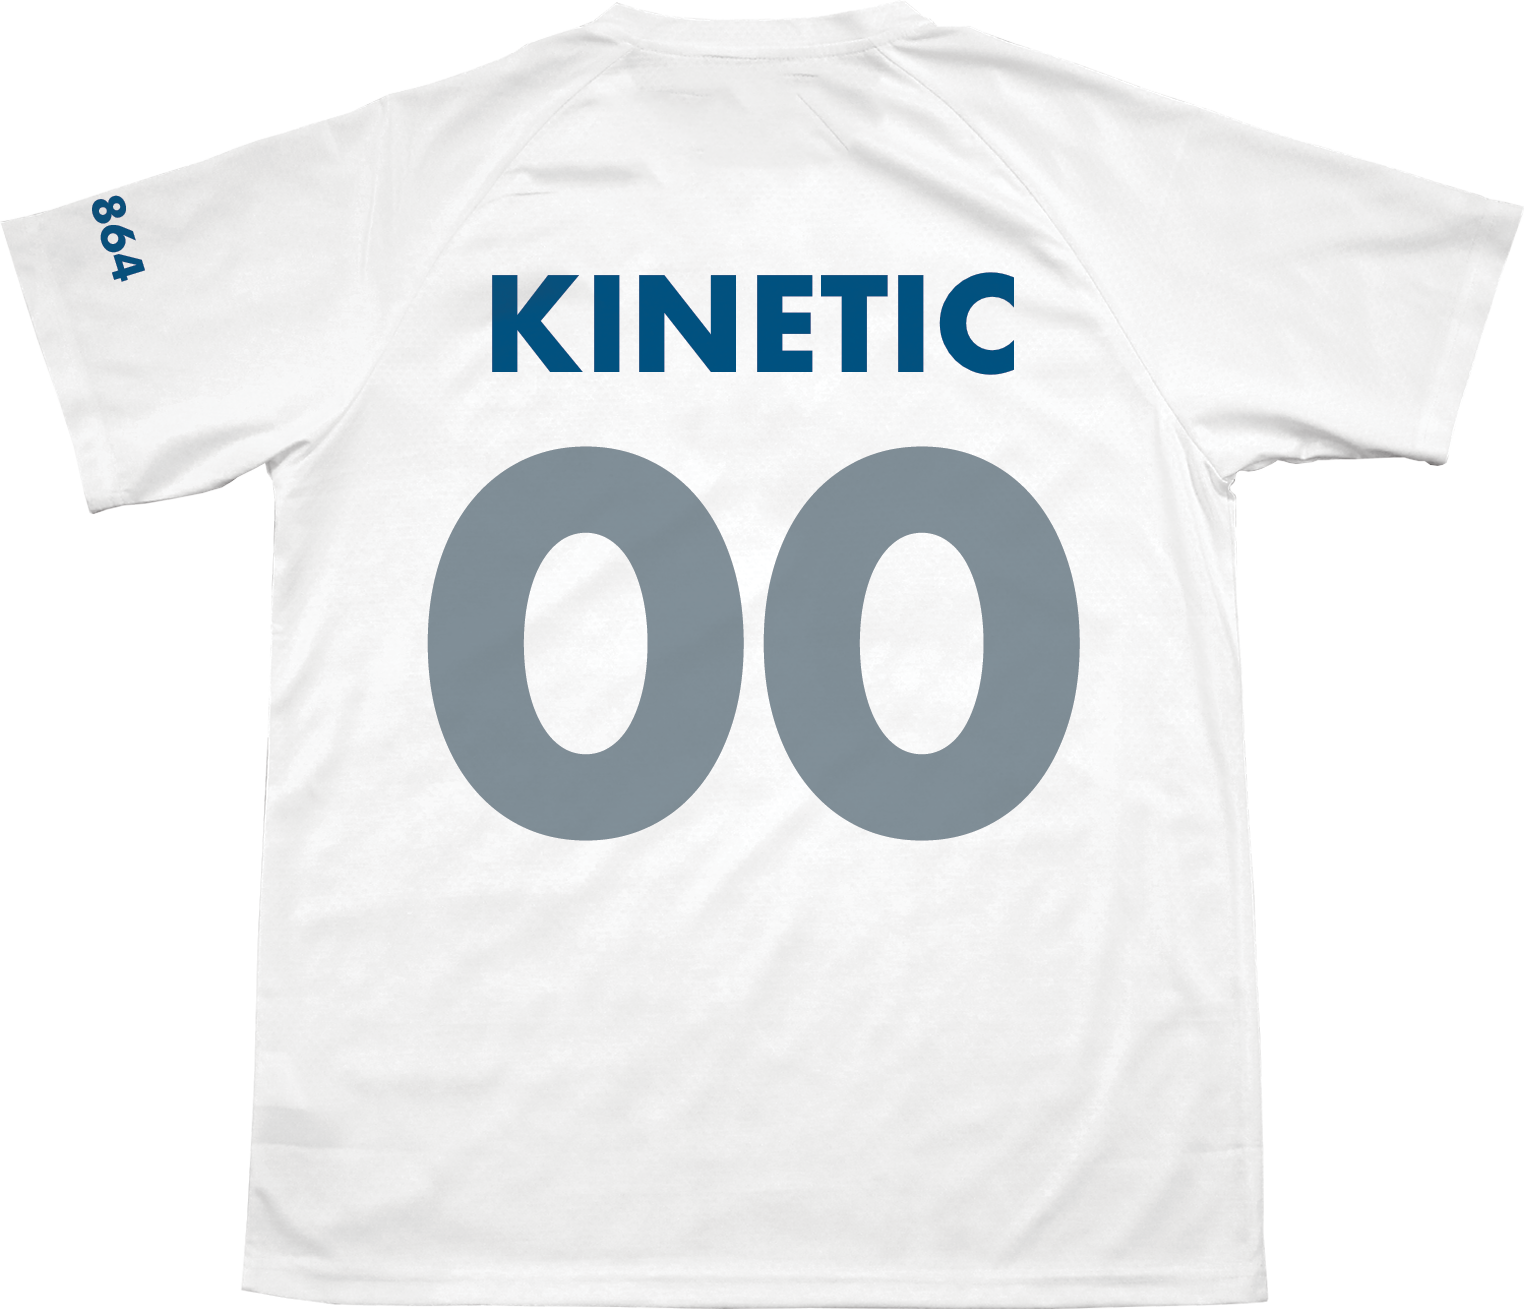 Theta Xi - Home Team Soccer Jersey - Kinetic Society